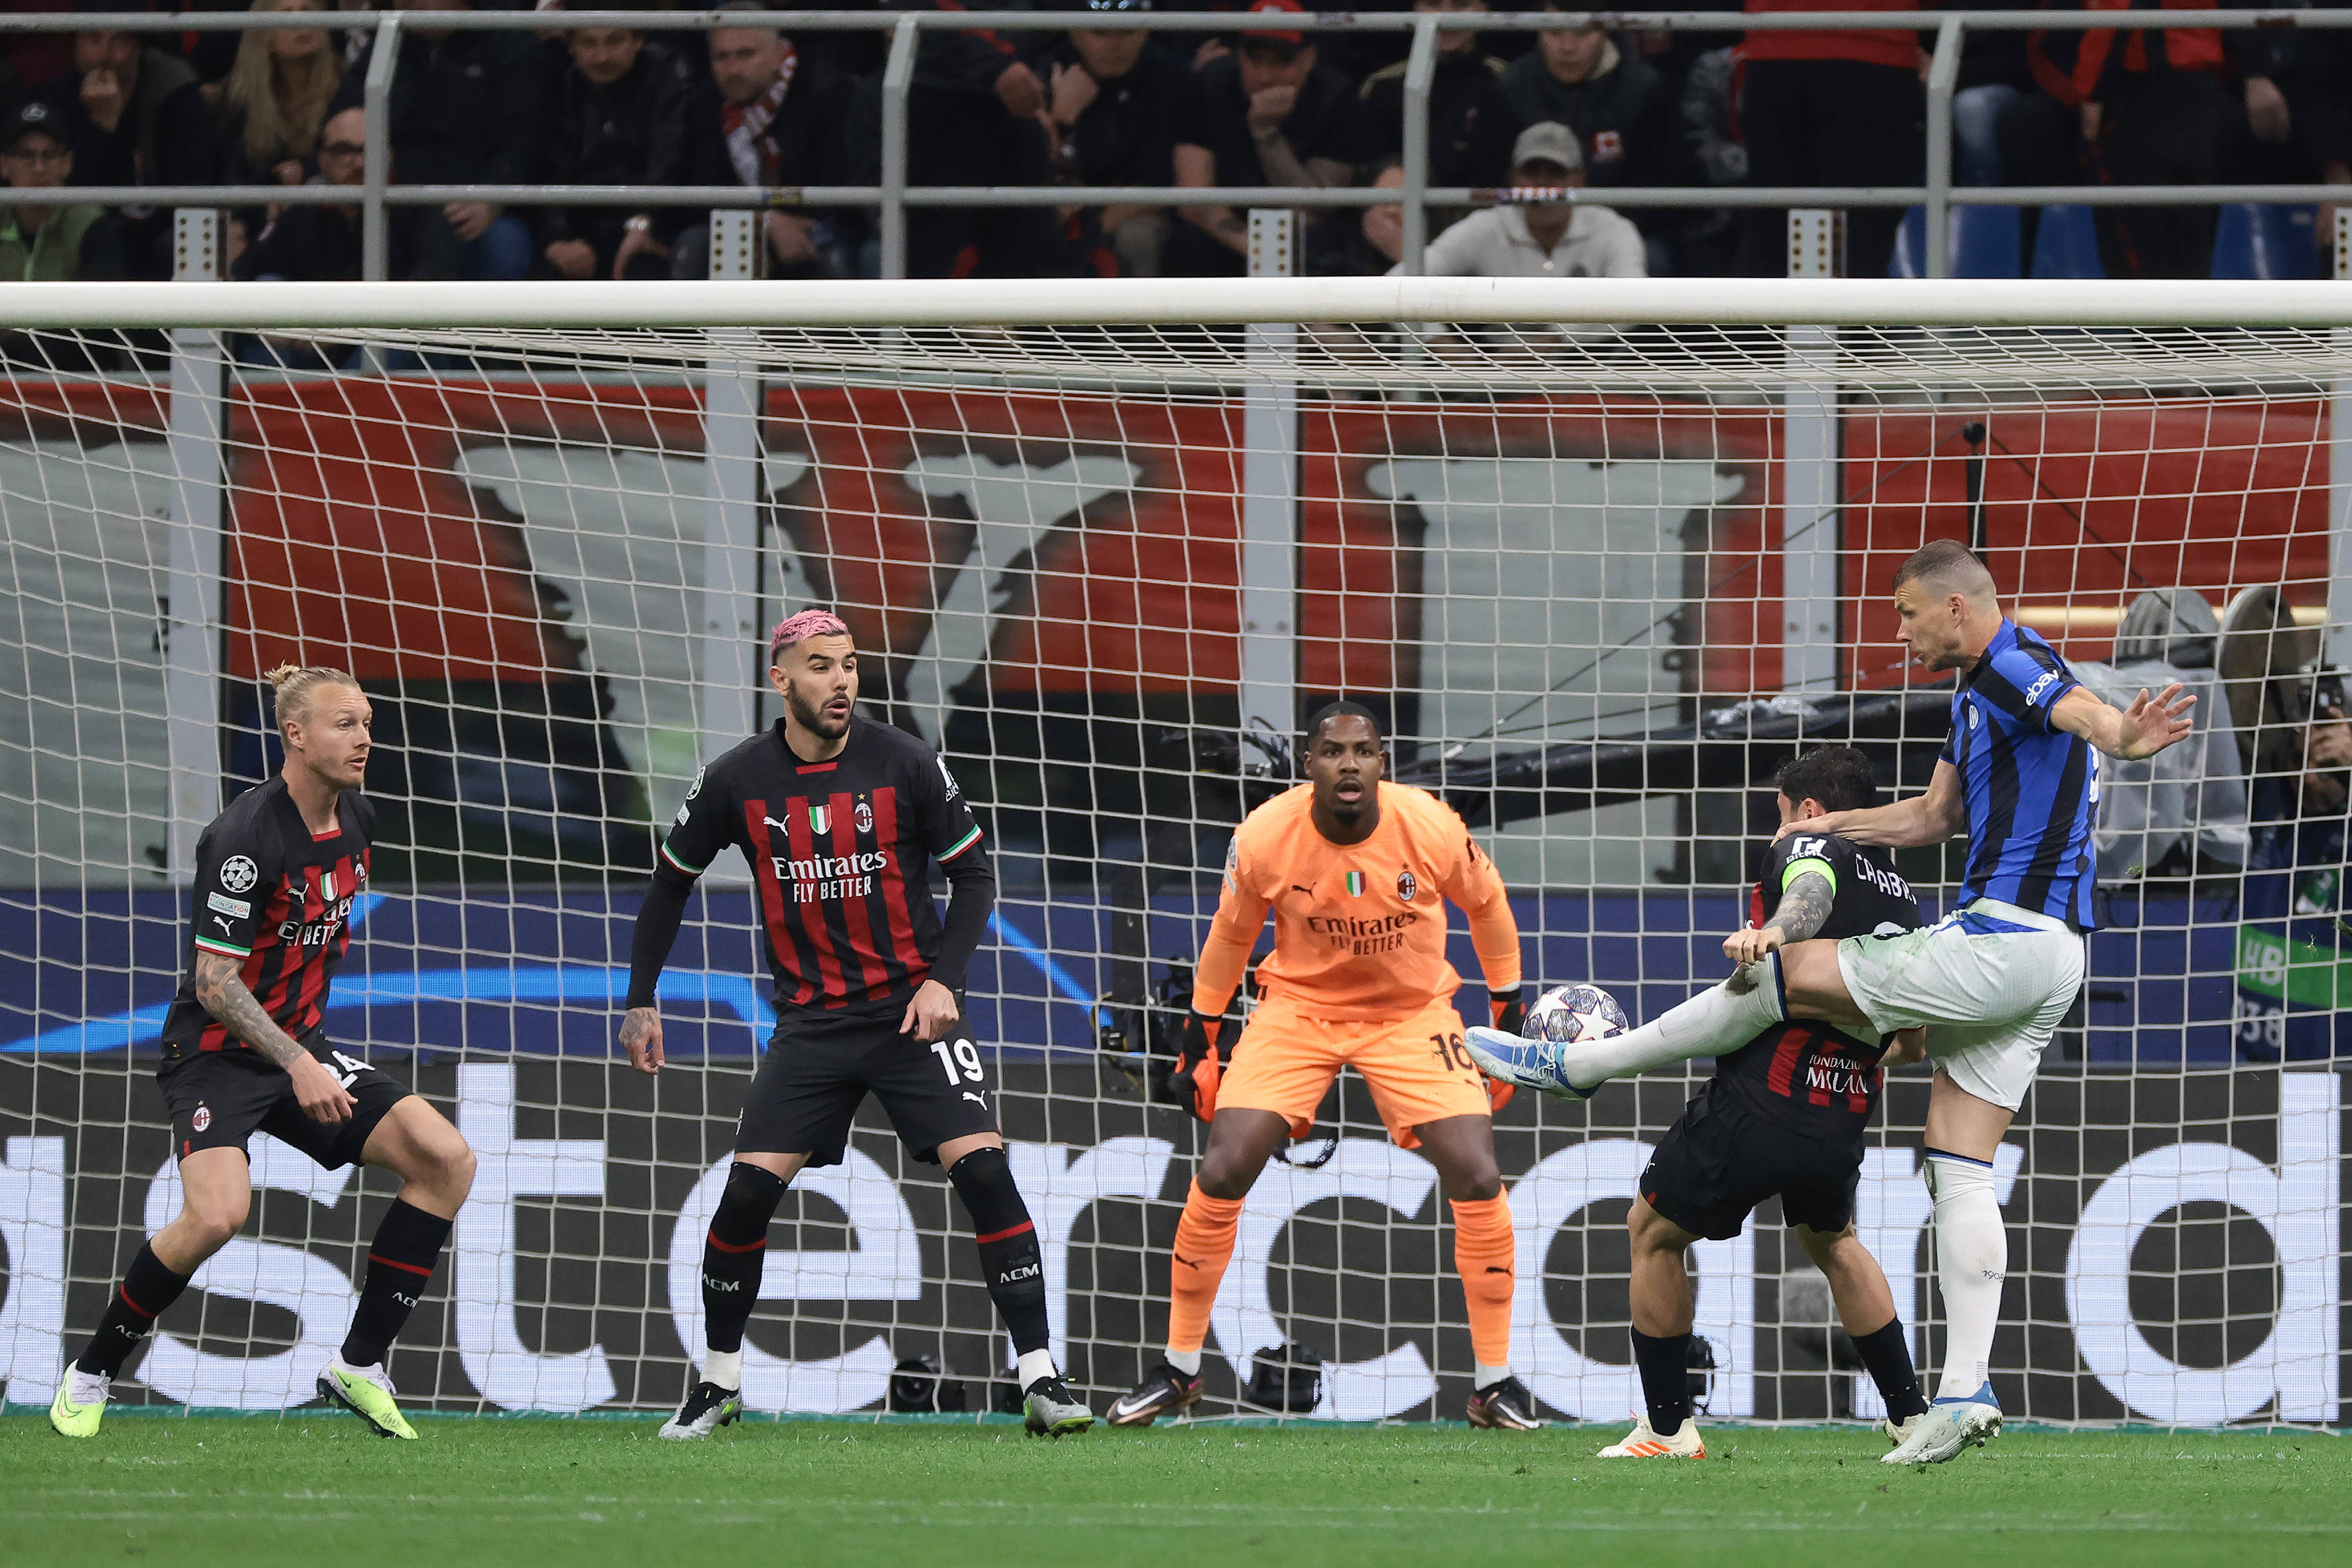 Milan-Inter, la girata al volo di Dzeko che porta in vantaggio i nerazzurri. Gol magnifico